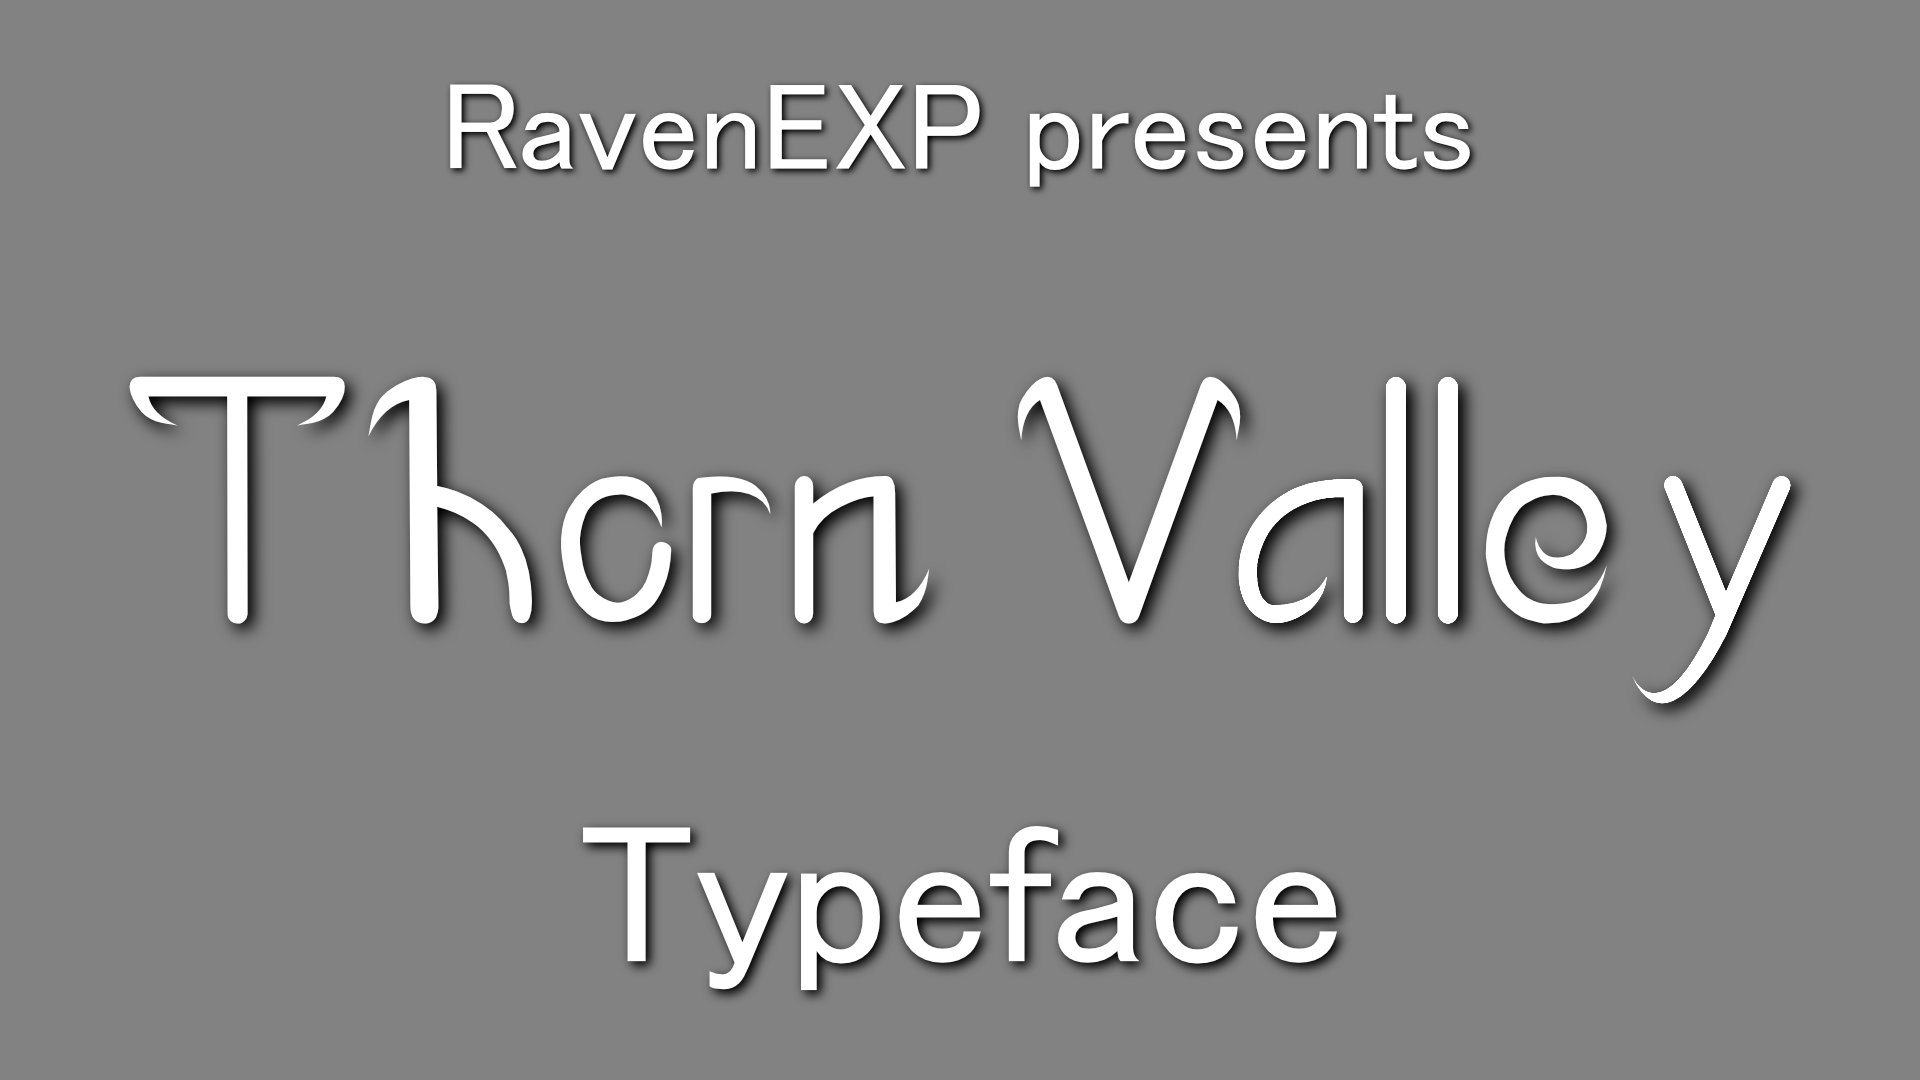 Thorn Valley revenexp